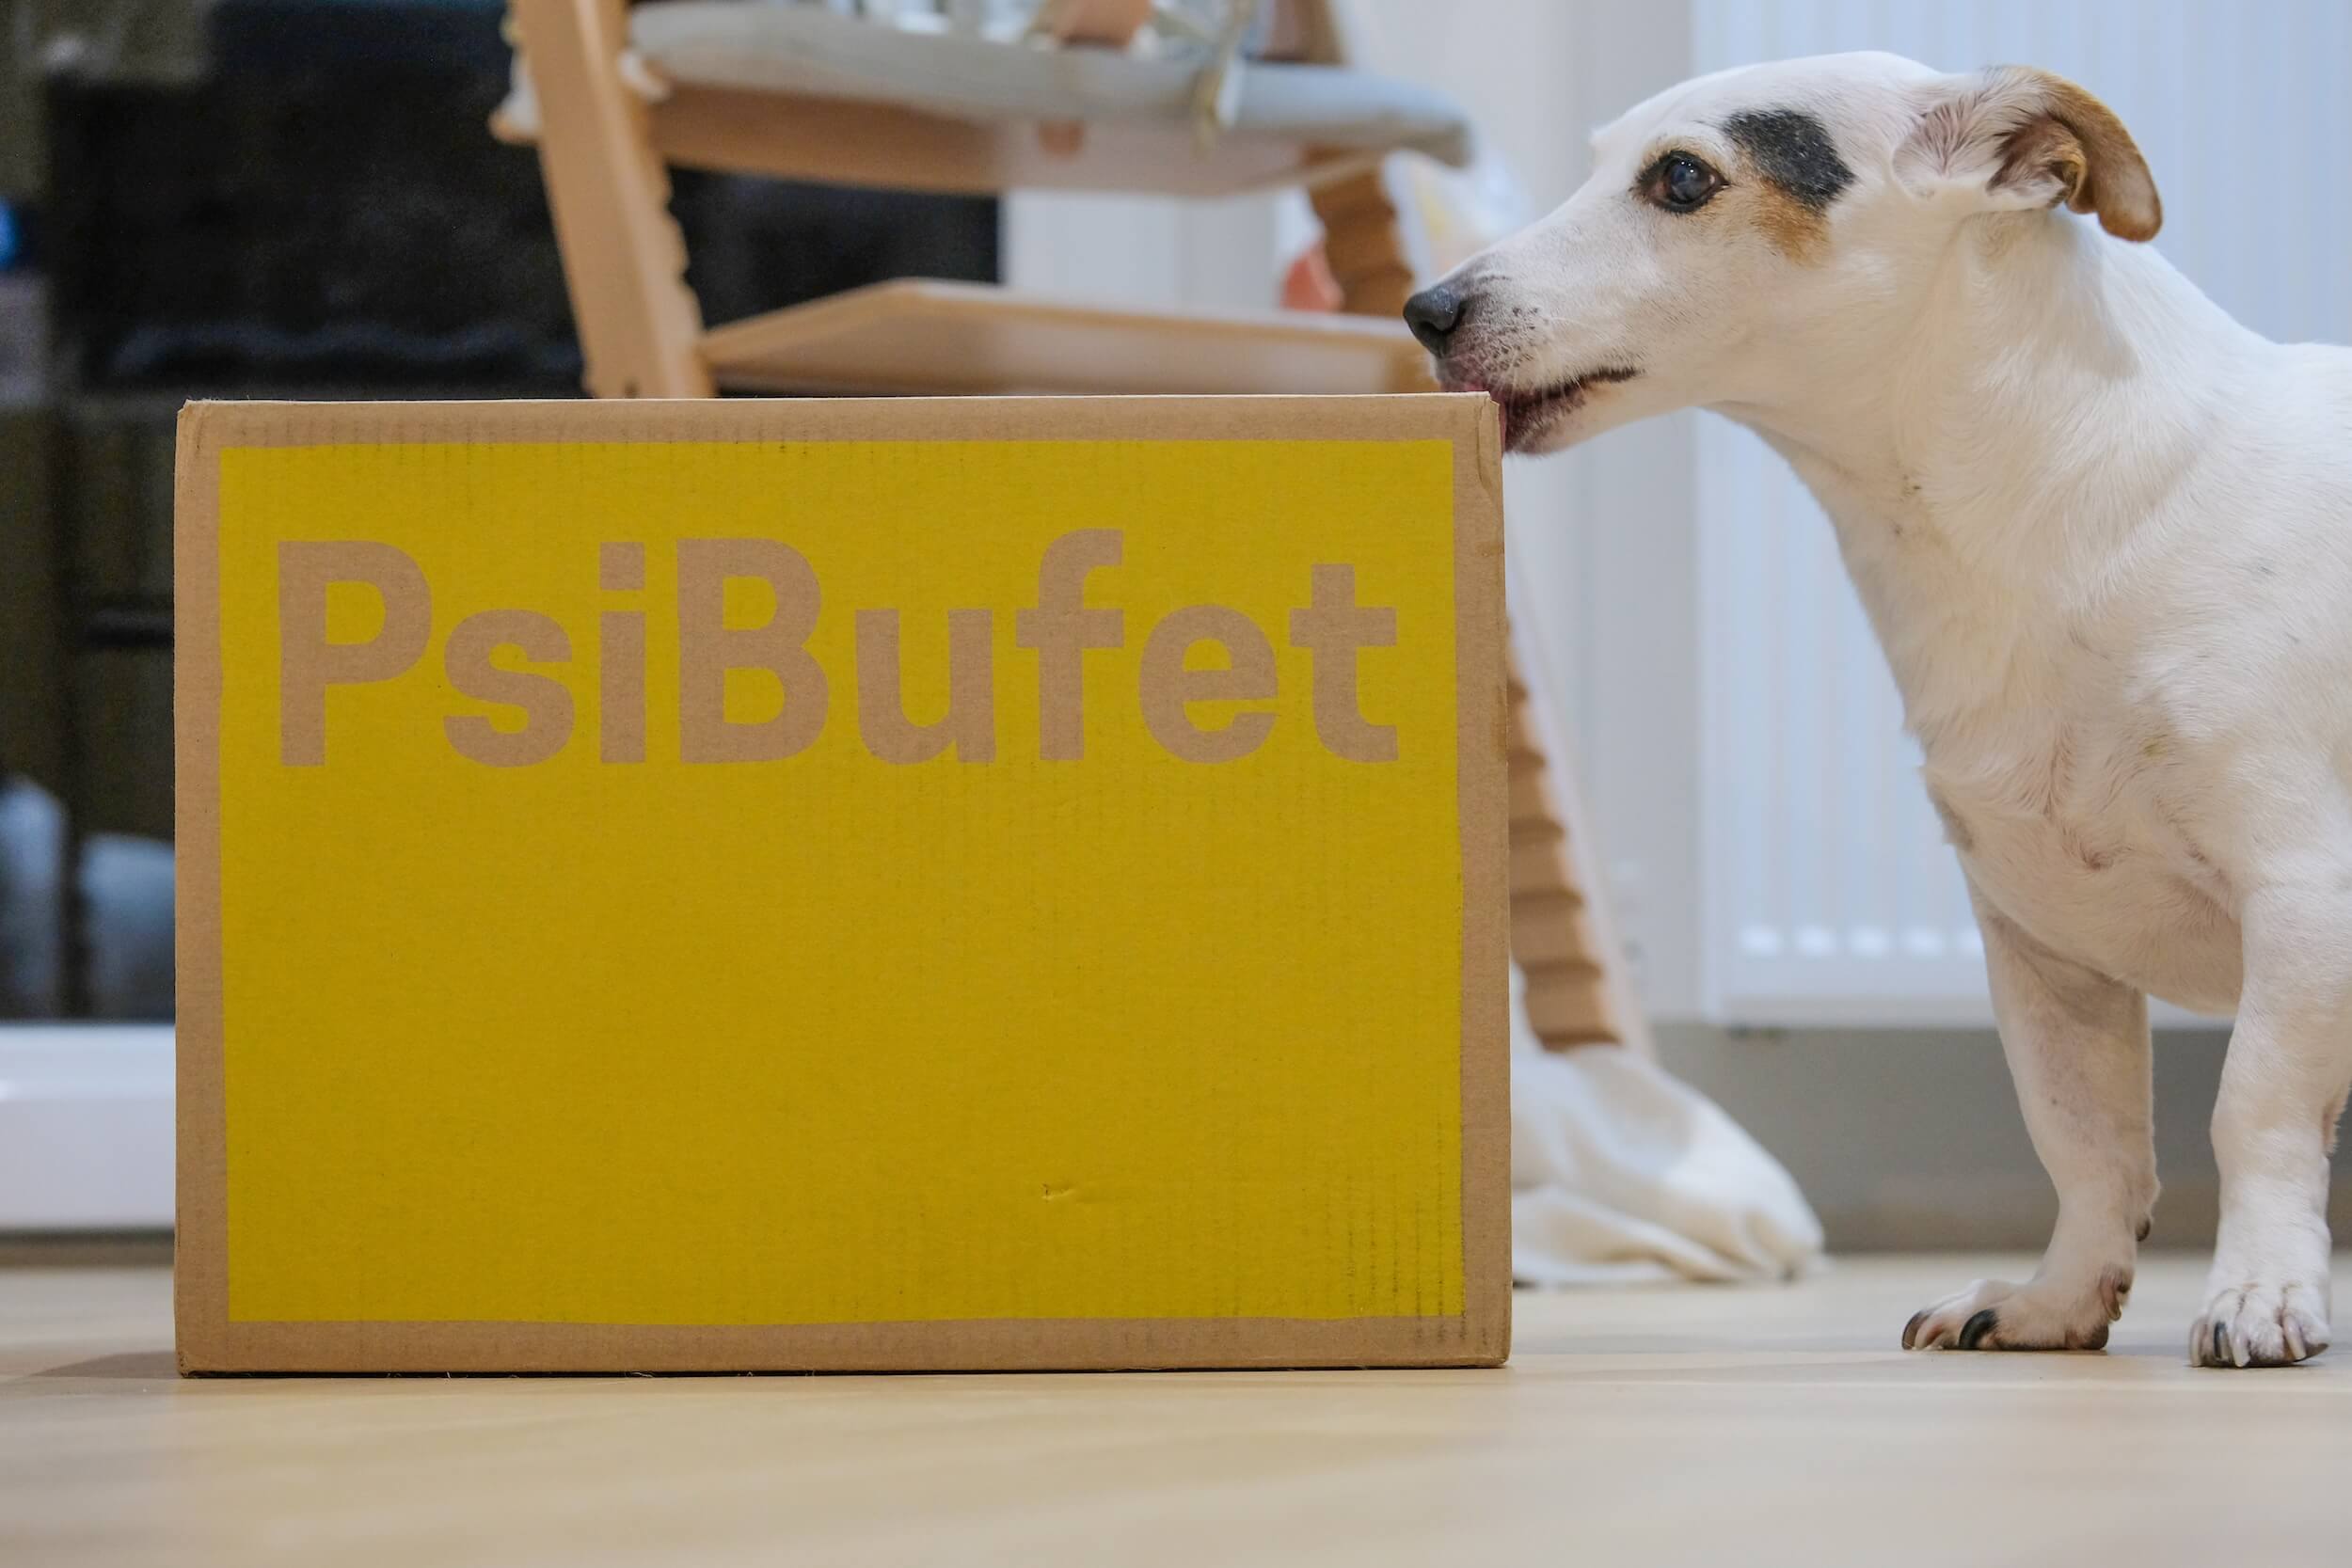 Sprawdzam Psi Bufet - testuje dietę dla psów - vélemény? 🤔